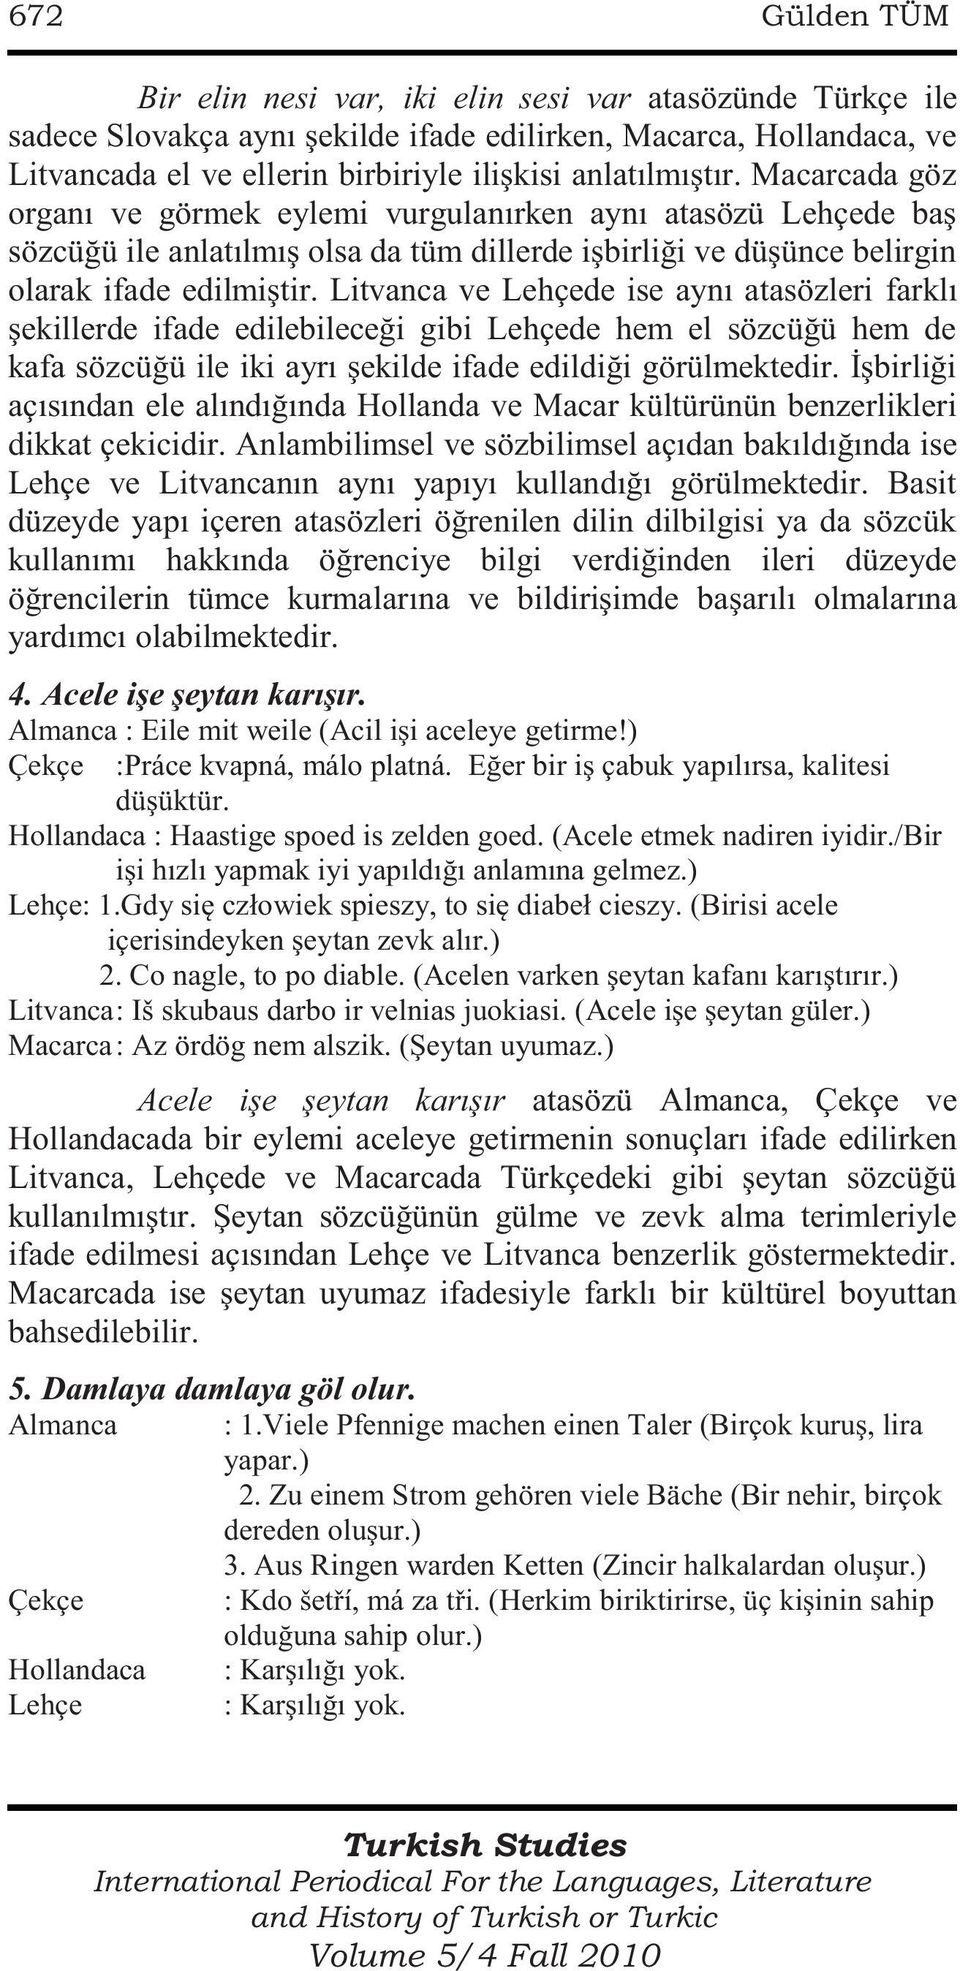 Litvanca ve Lehçede ise aynı atasözleri farklı şekillerde ifade edilebileceği gibi Lehçede hem el sözcüğü hem de kafa sözcüğü ile iki ayrı şekilde ifade edildiği görülmektedir.